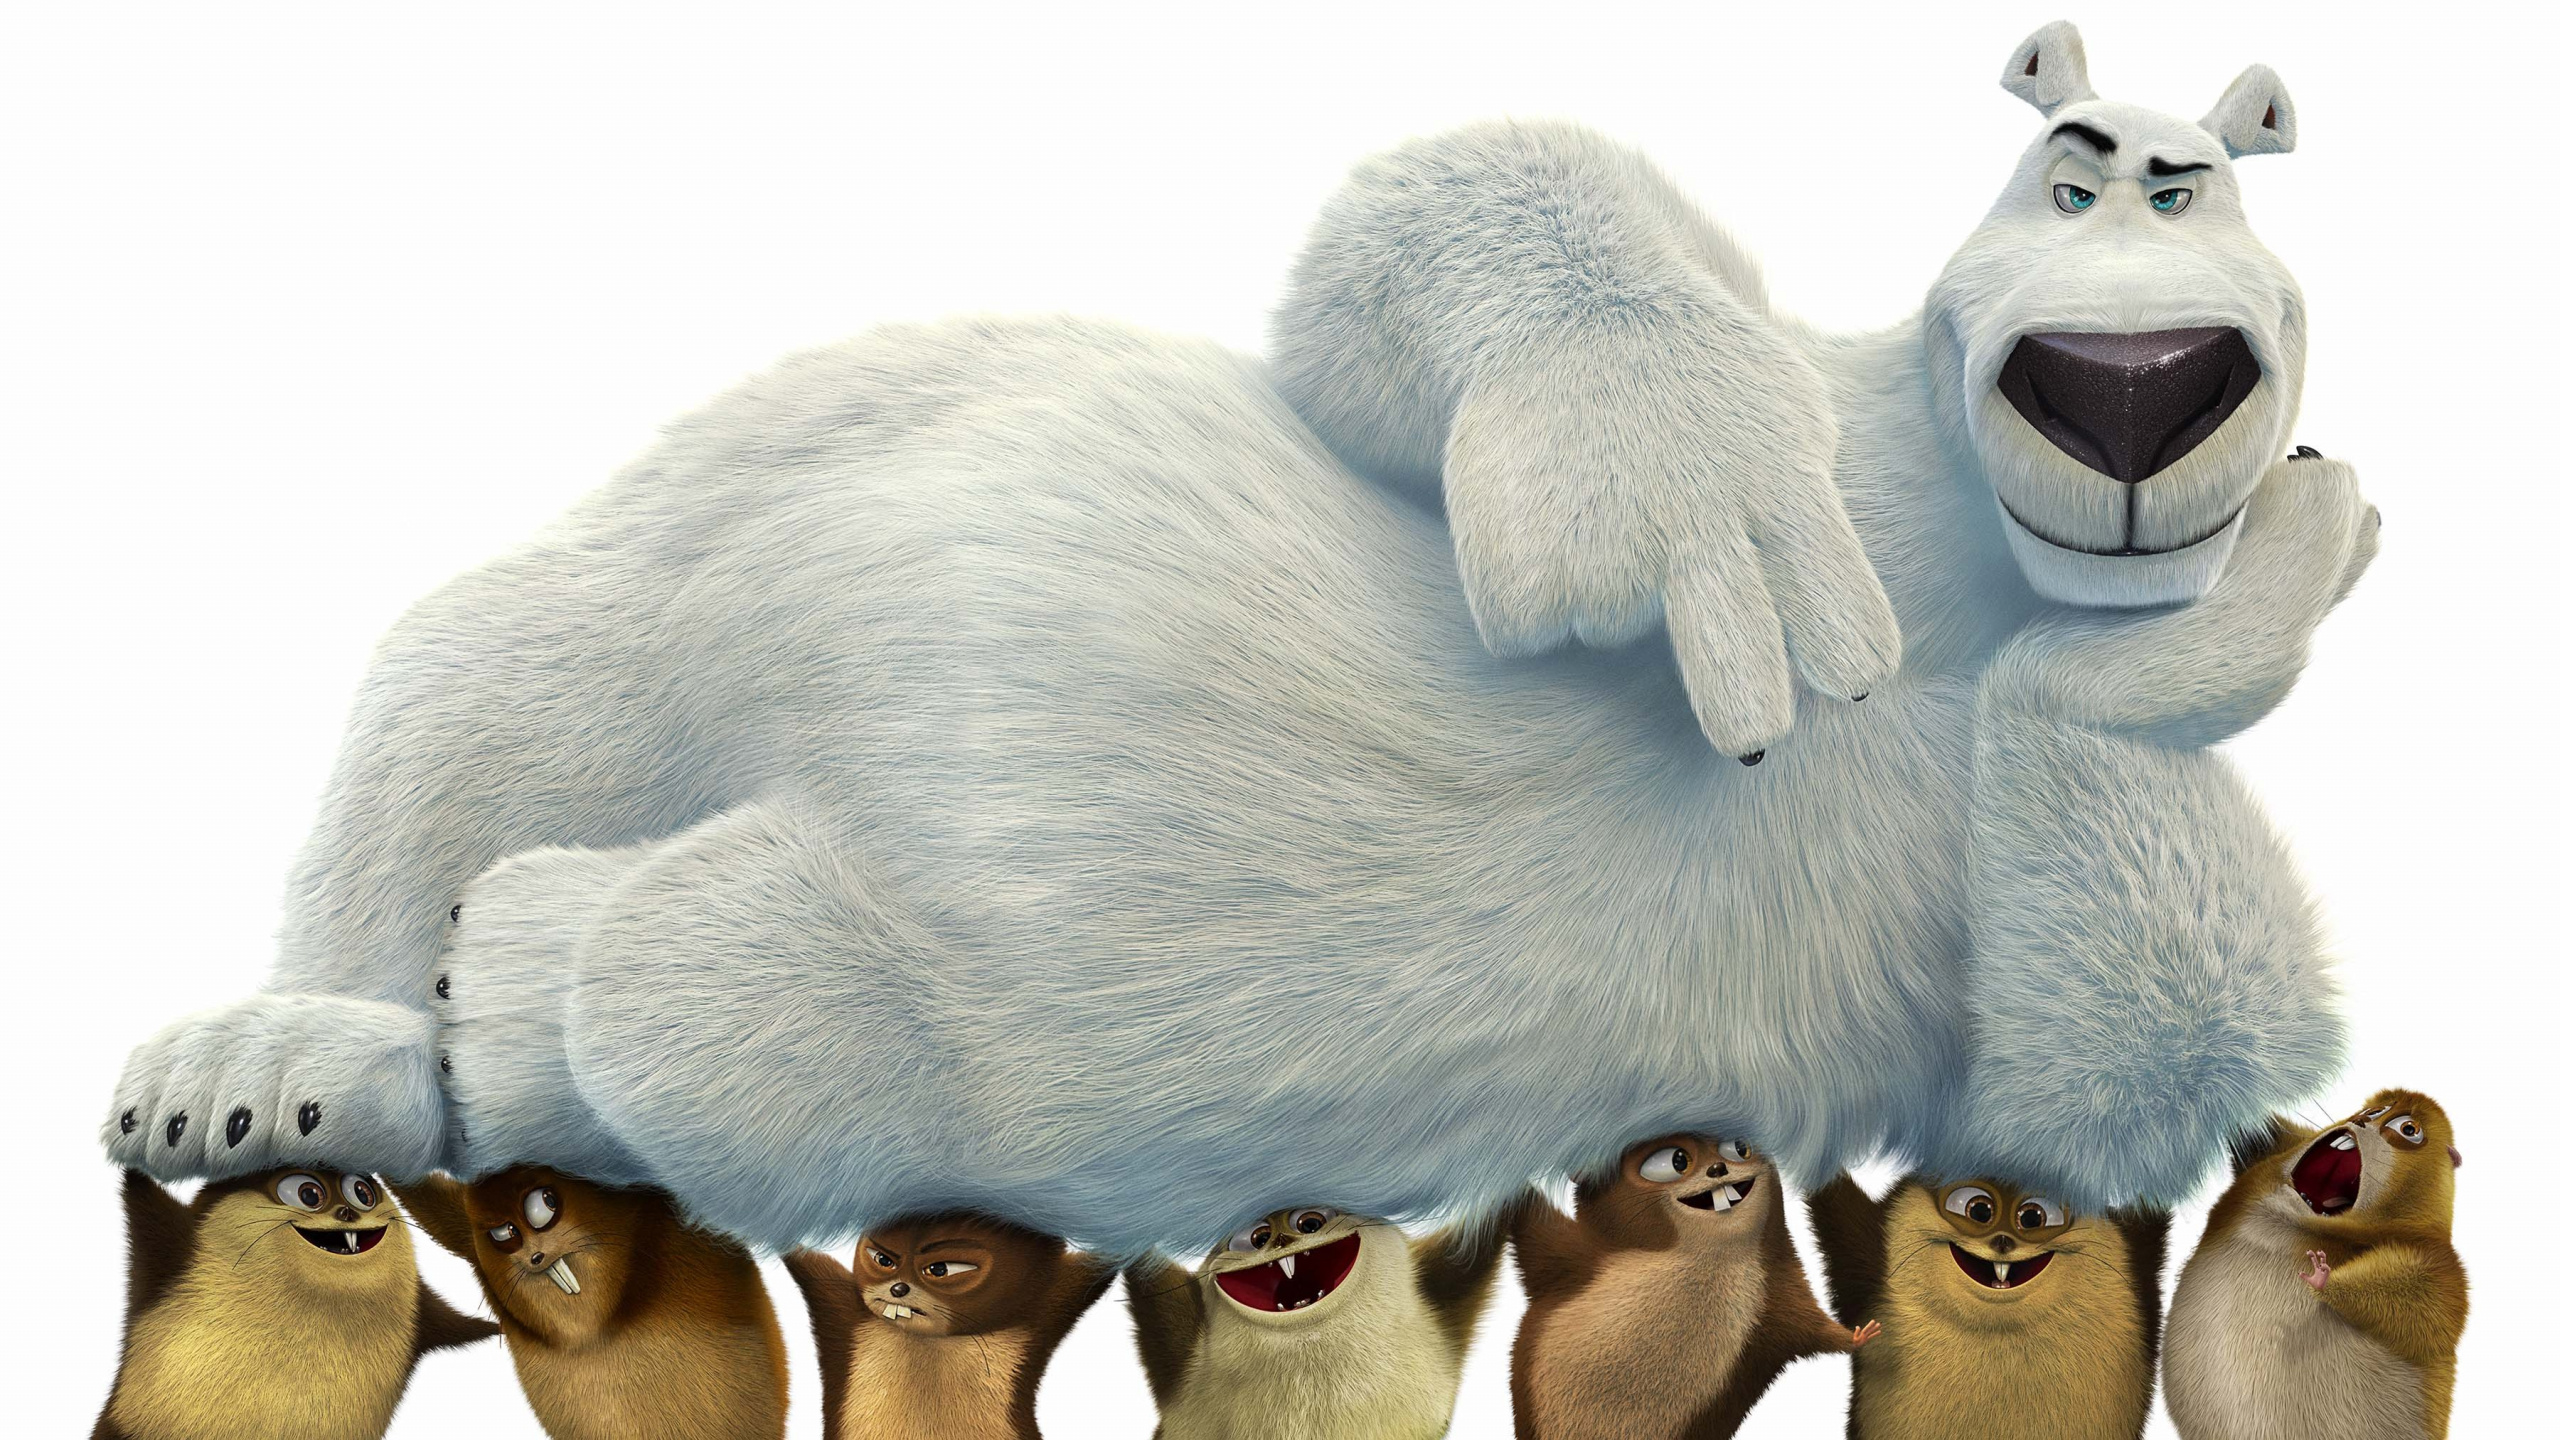 北极熊, 毛绒玩具, 动画, 毛绒, 电影 壁纸 2560x1440 允许